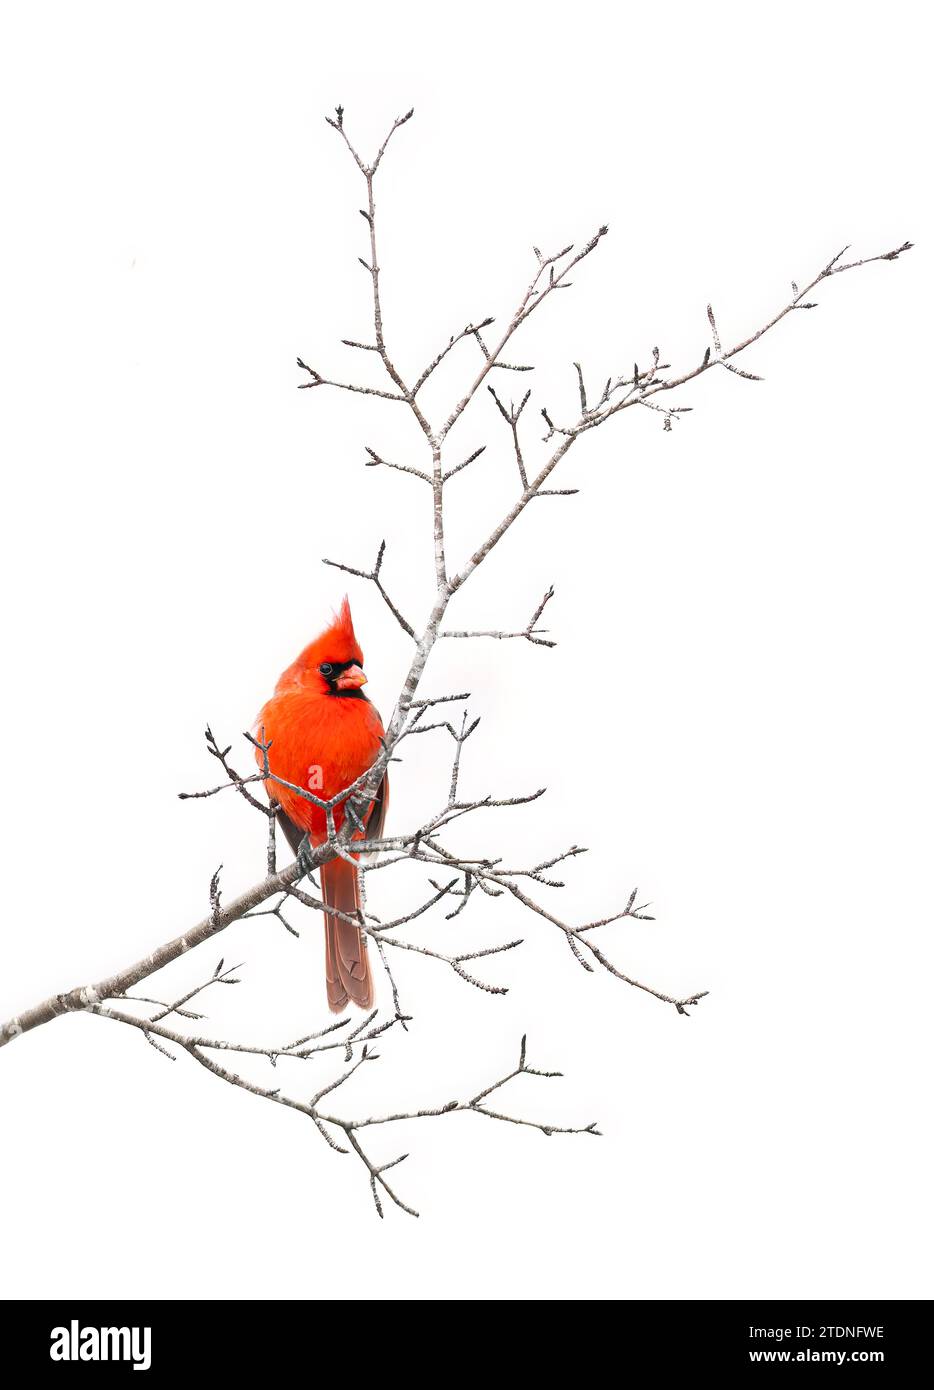 Mâle cardinal du Nord perché sur une branche par une froide journée d'hiver au Canada Banque D'Images